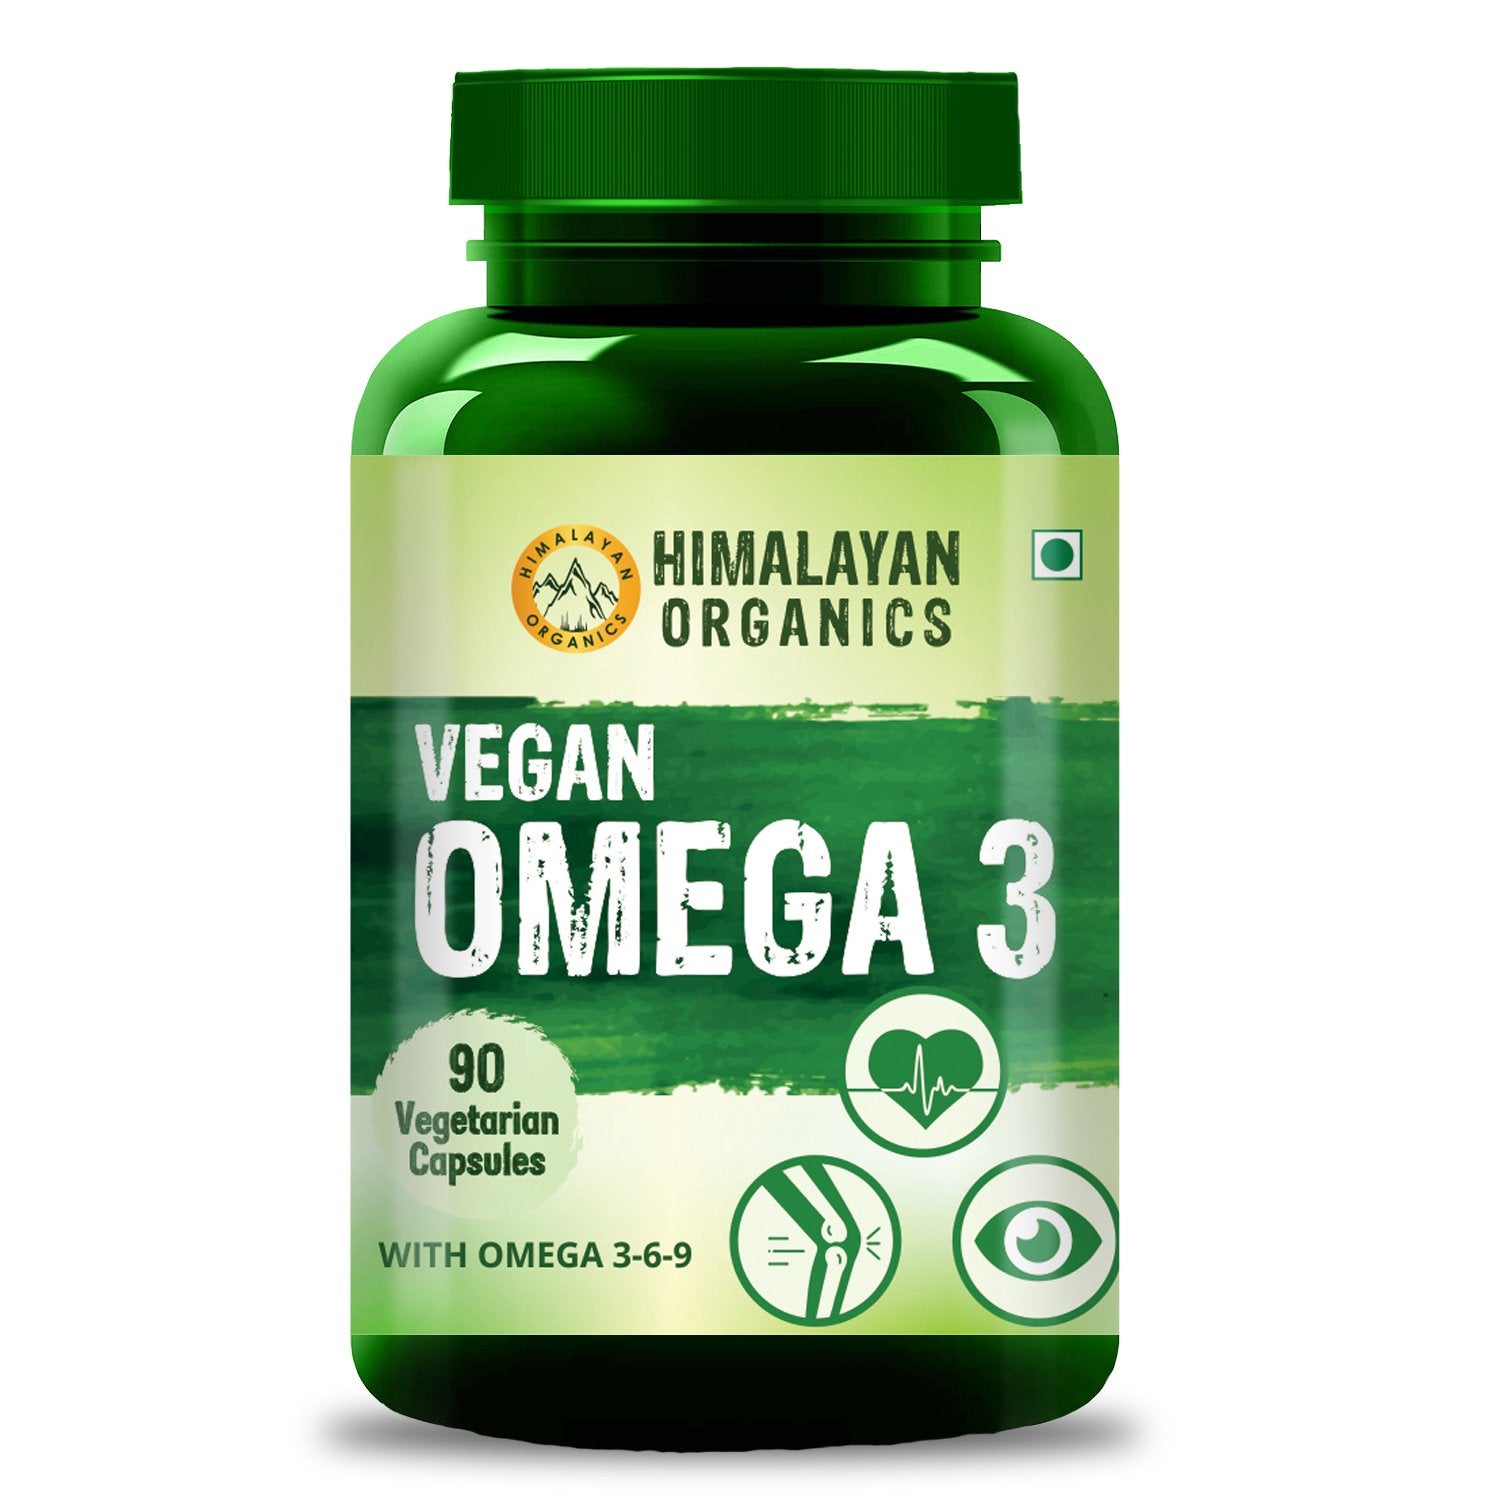 Himalayan Organics Vegan Omega 3 